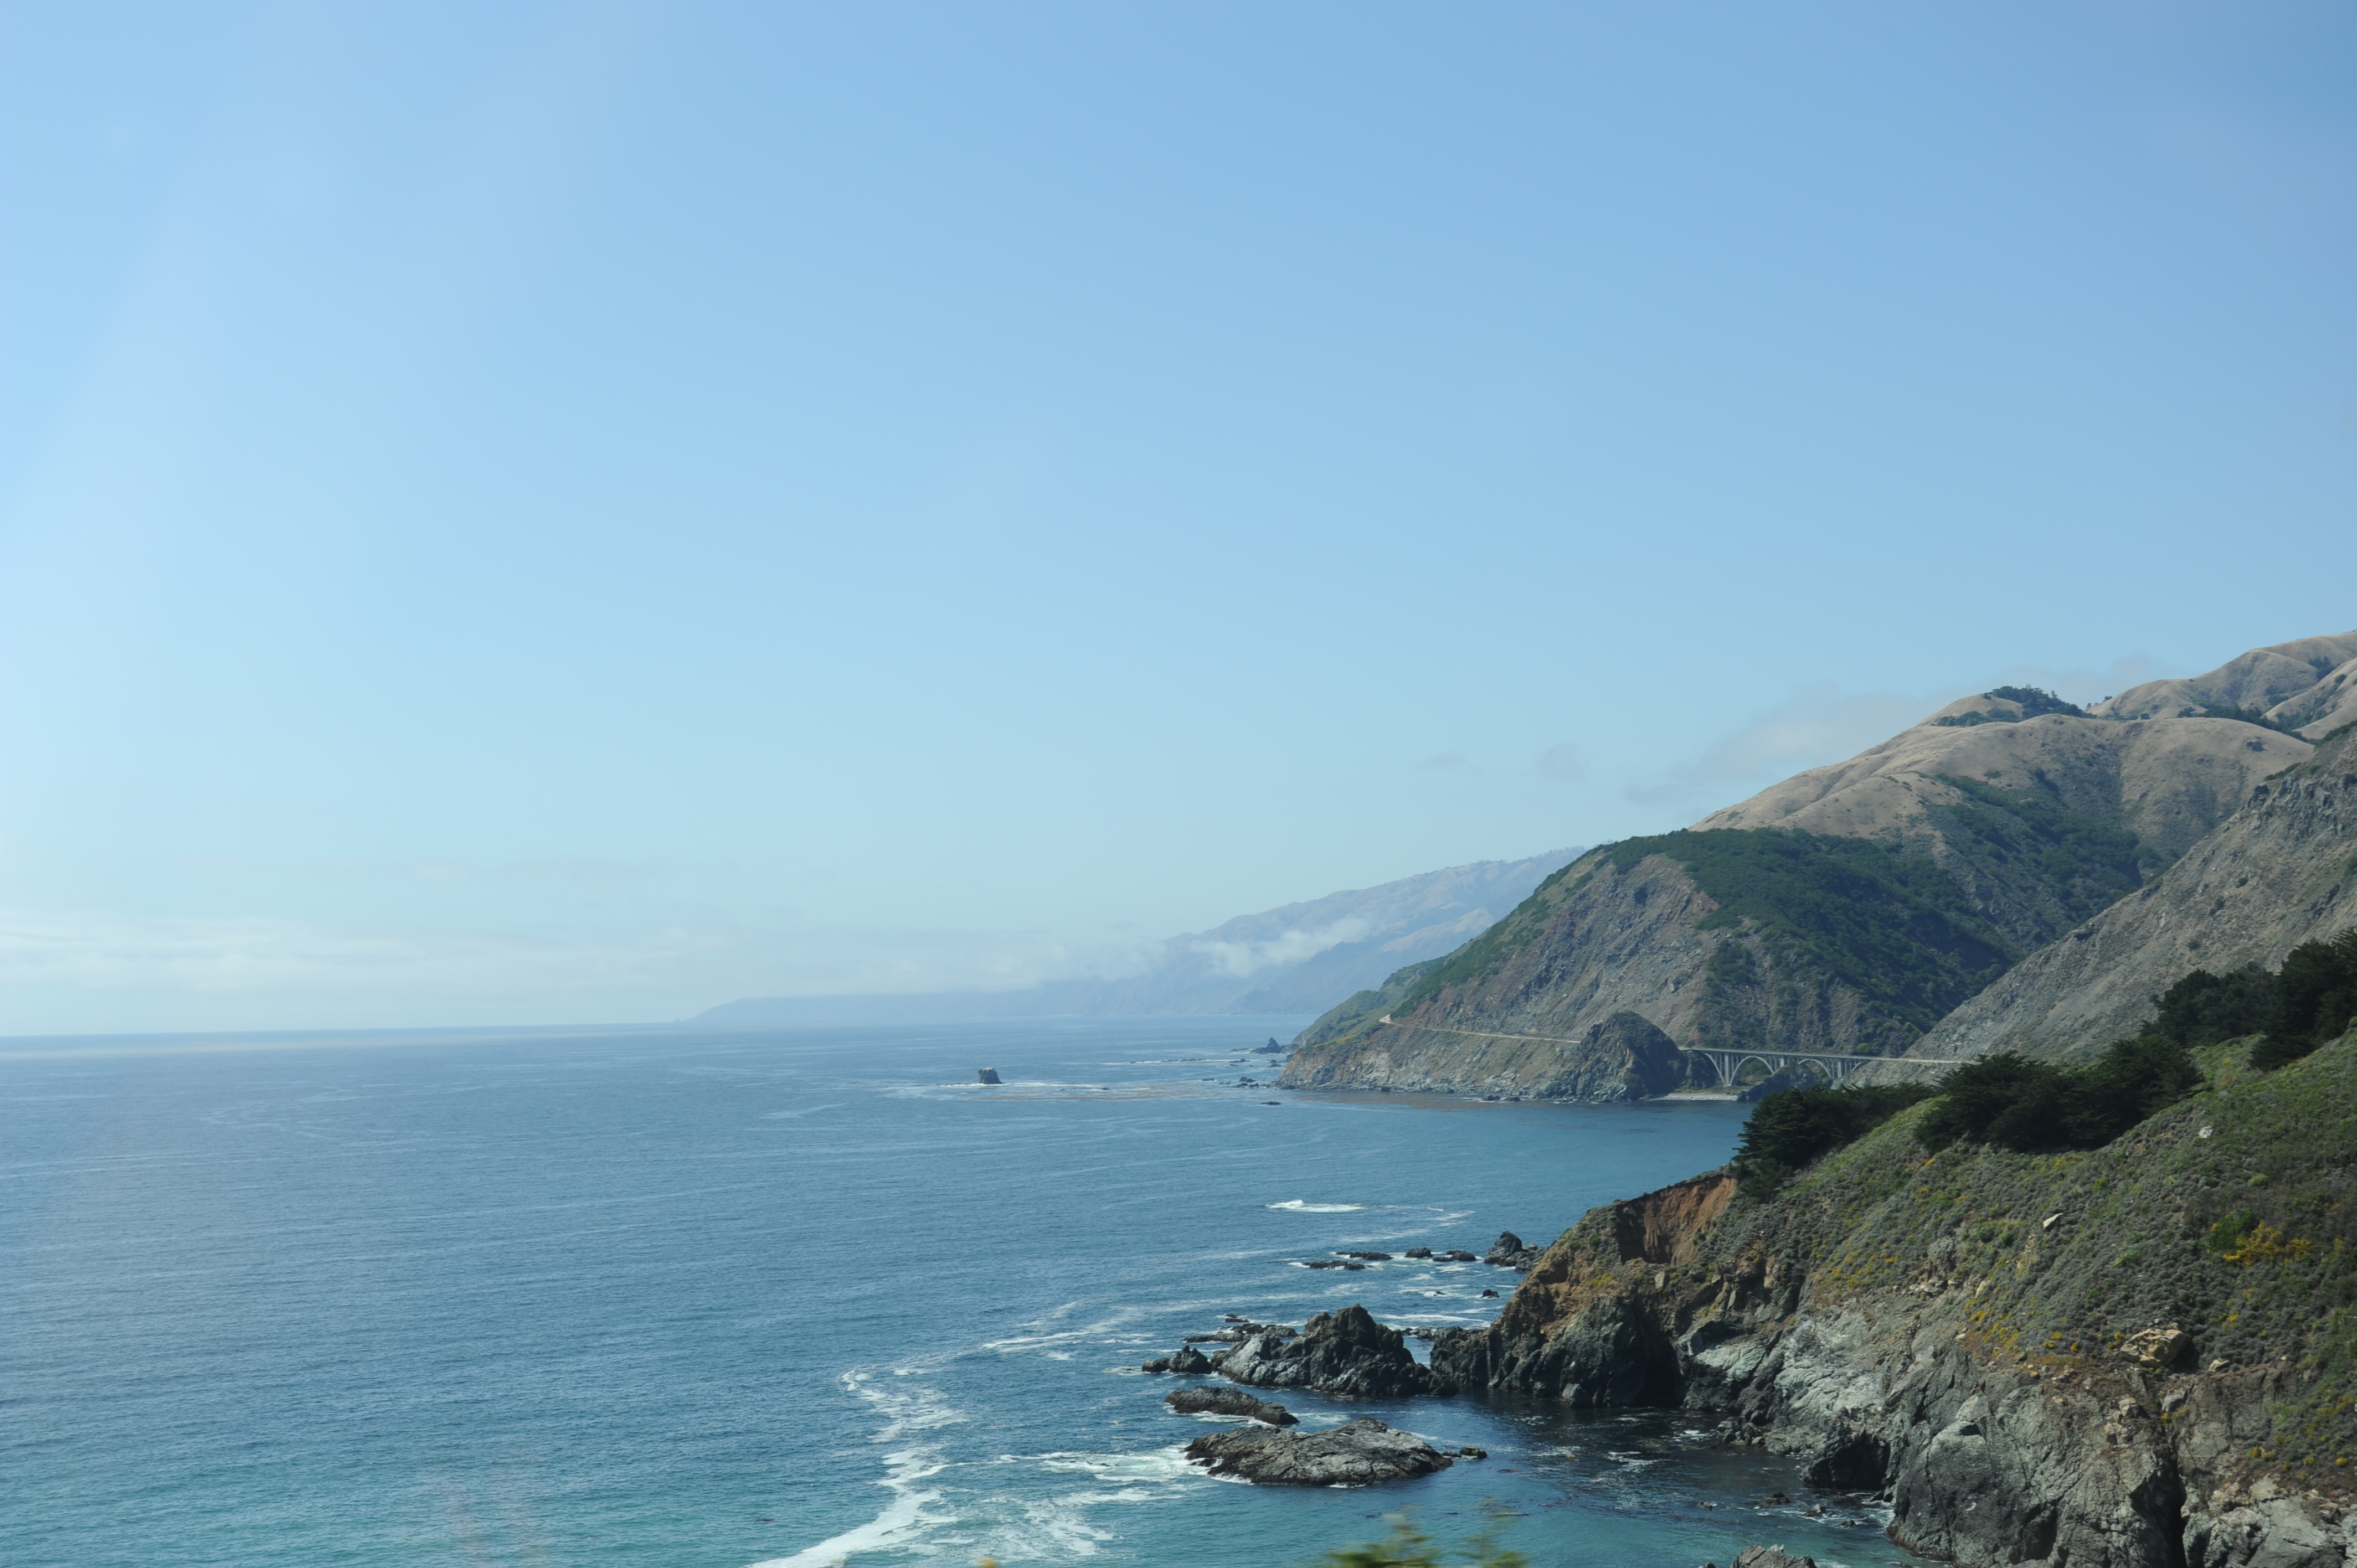 Pacific Coast Highway – South from San Francisco to Santa Barbara!